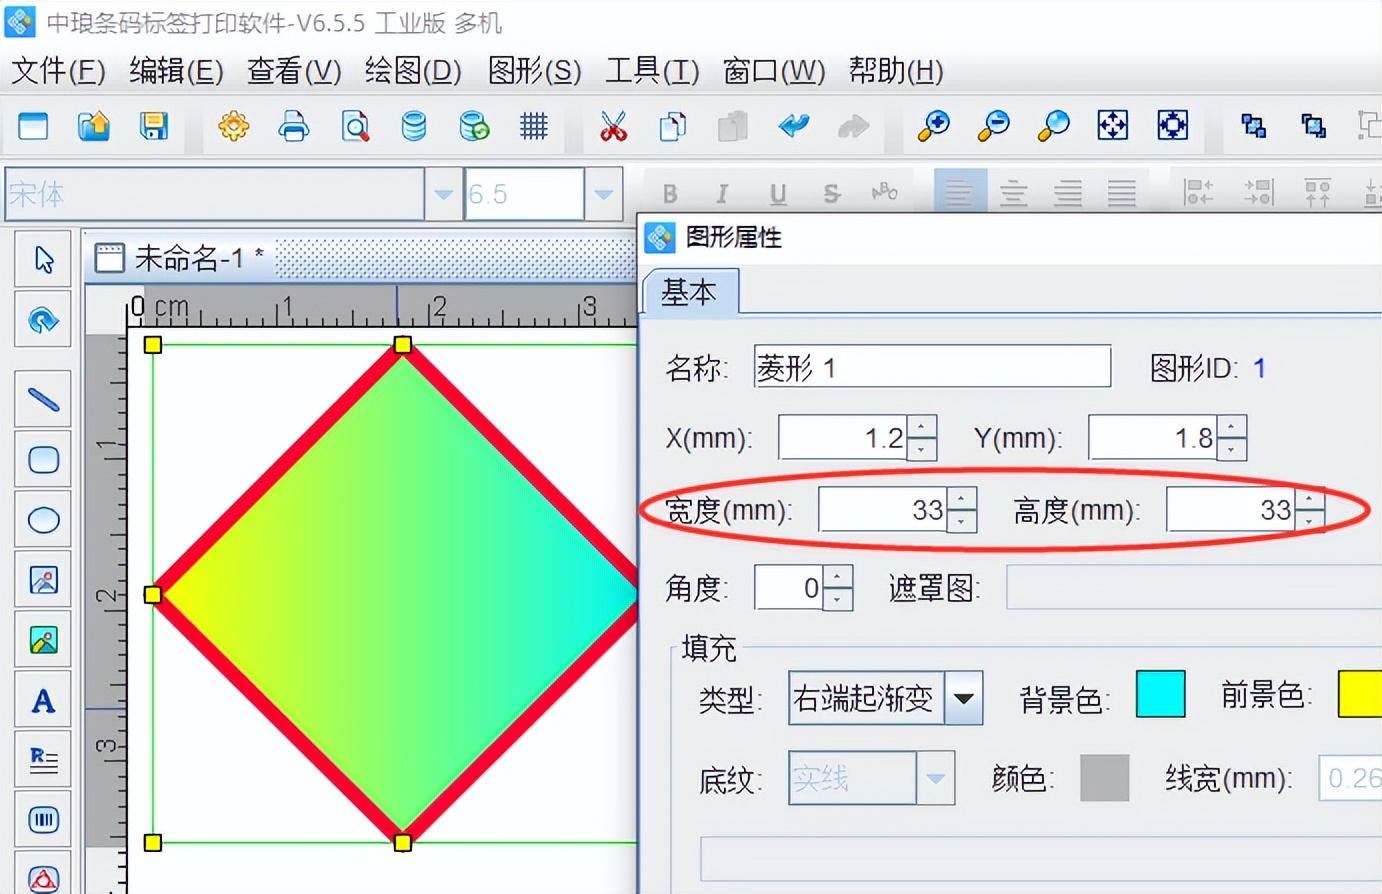 可变数据打印软件中绘制菱形对象示例